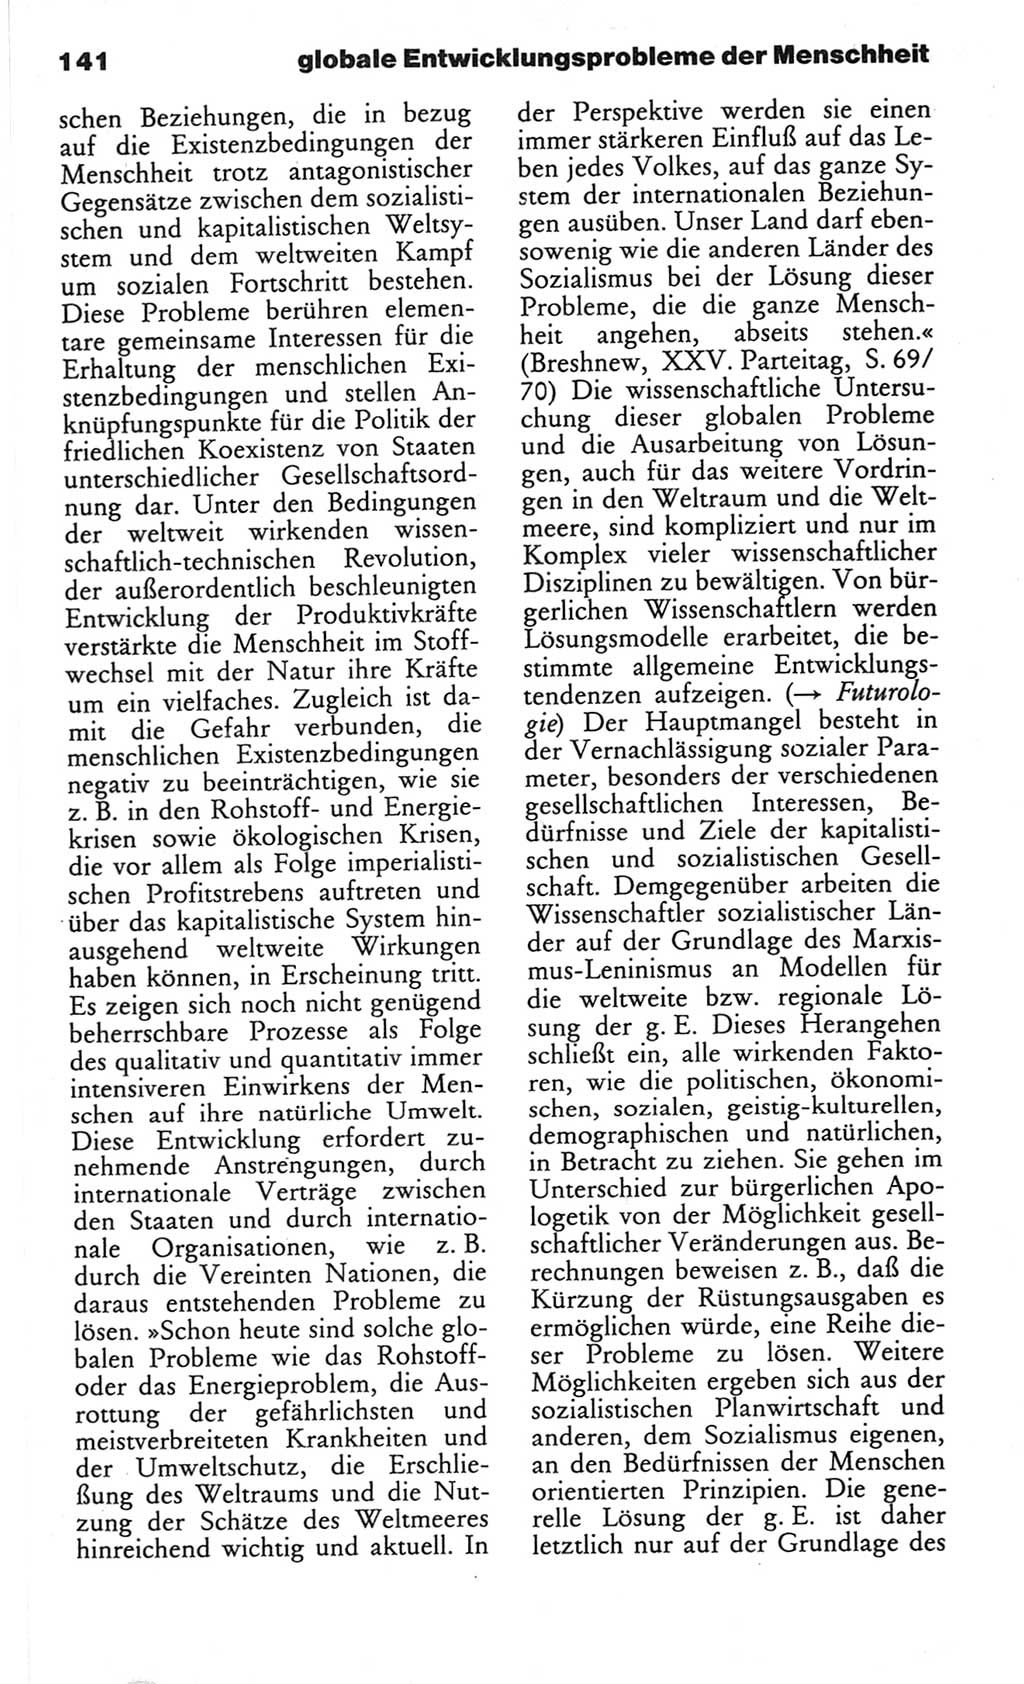 Wörterbuch des wissenschaftlichen Kommunismus [Deutsche Demokratische Republik (DDR)] 1982, Seite 141 (Wb. wiss. Komm. DDR 1982, S. 141)